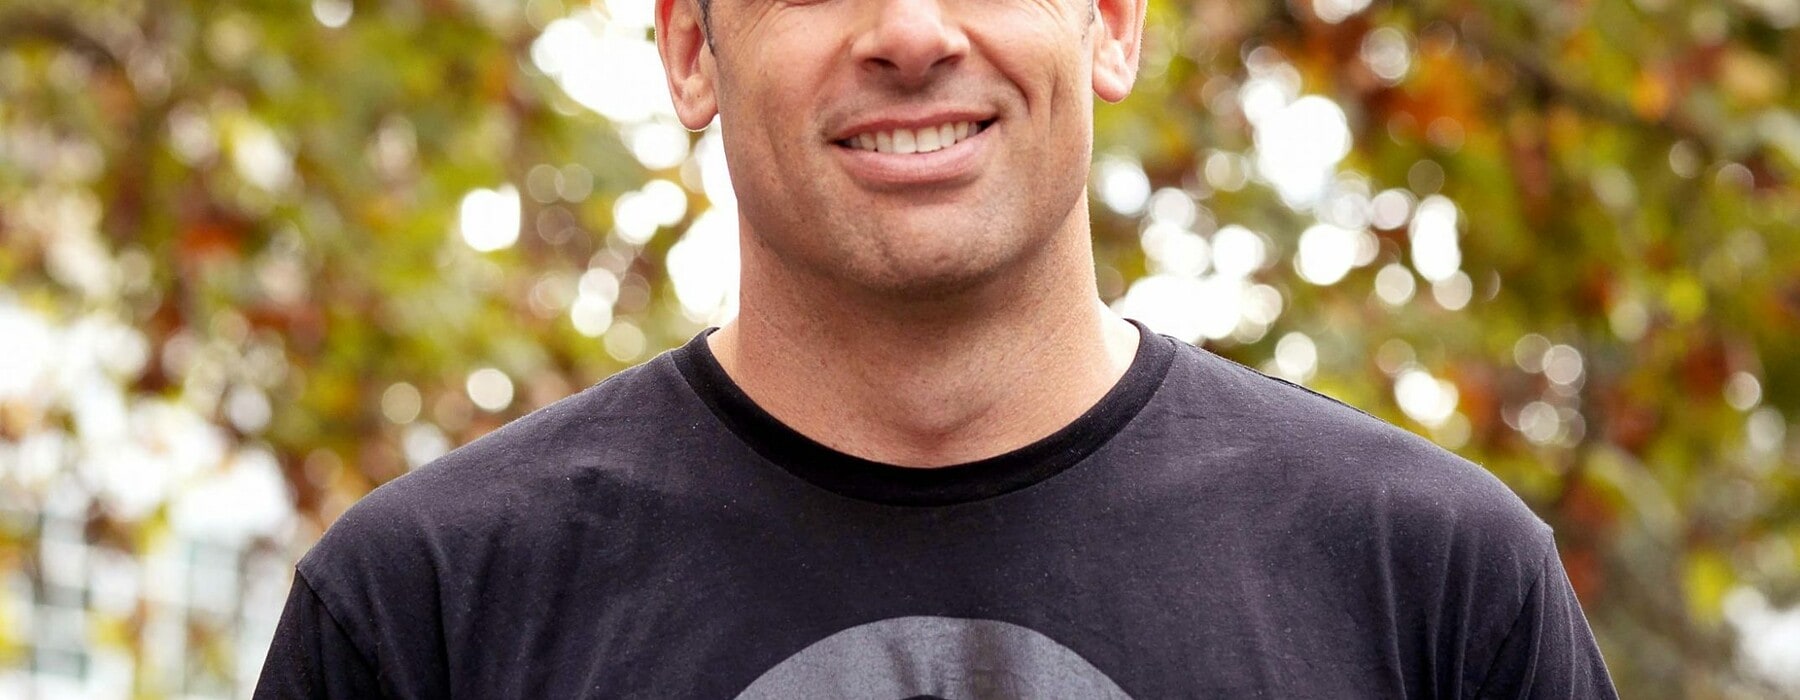 Xero executive Craig Hudson wearing a black Xero t-shirt